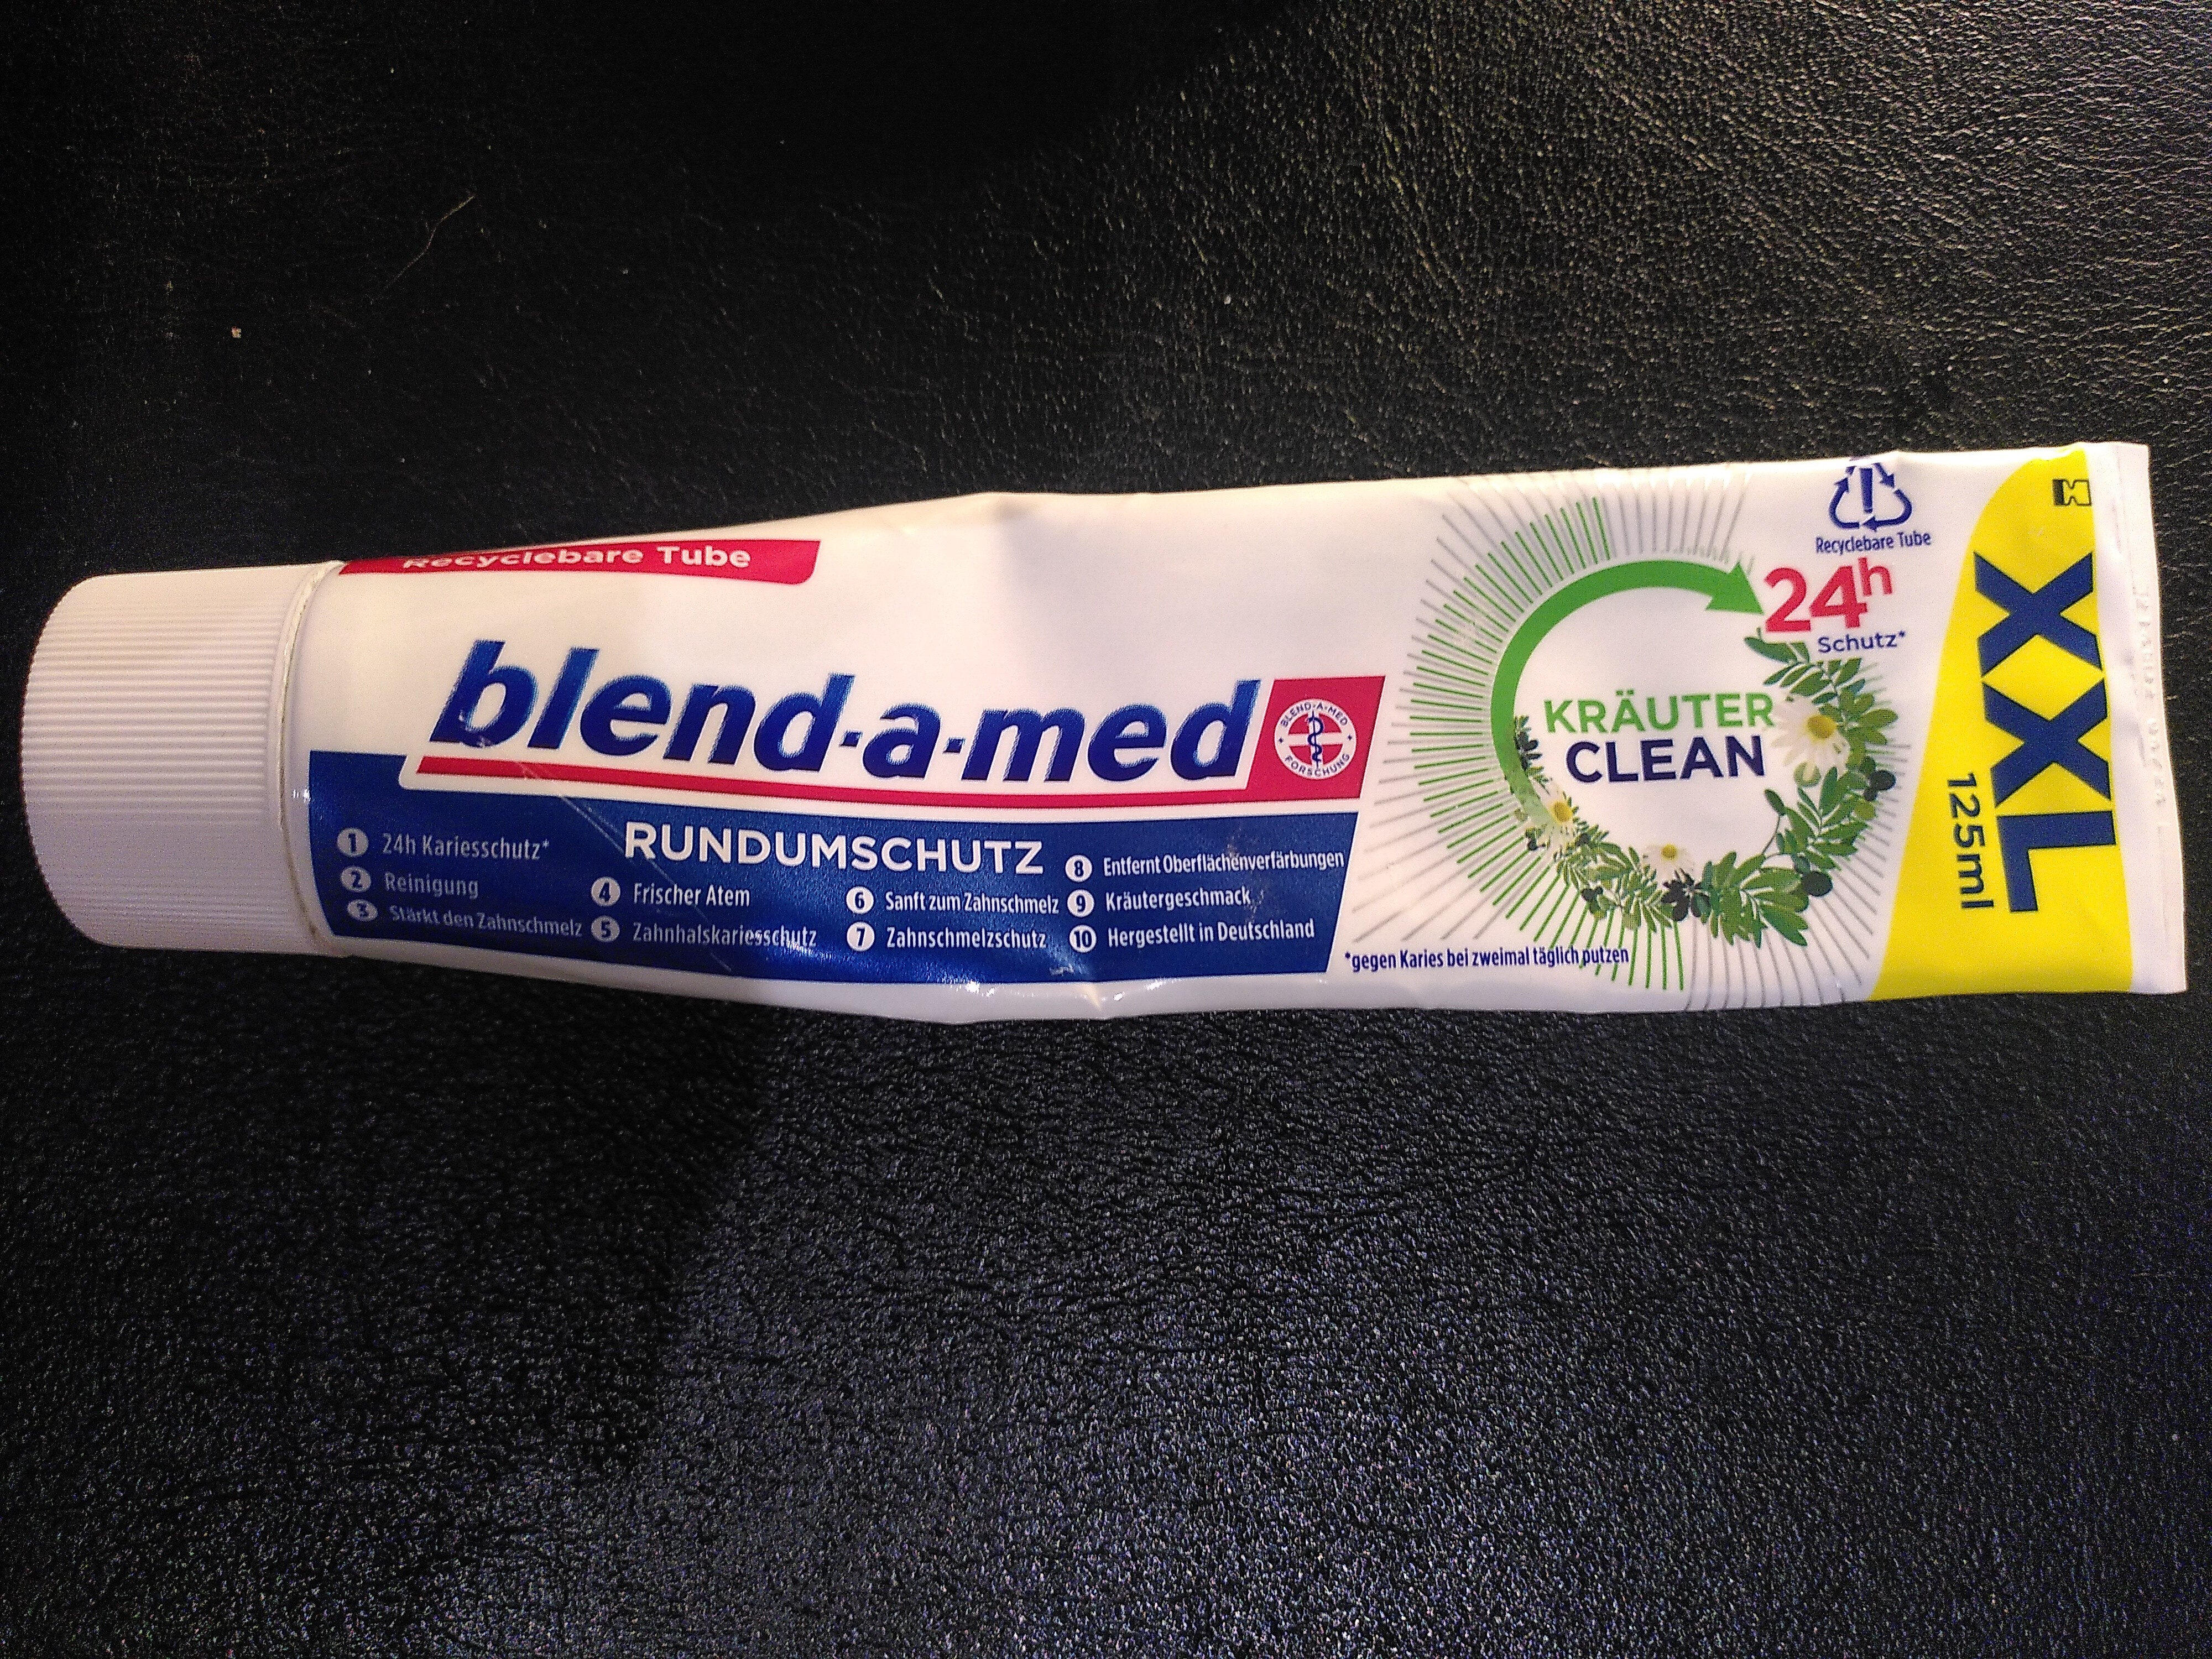 Blend-a-med Rundumschutz Kräuter Clean - Produkt - en